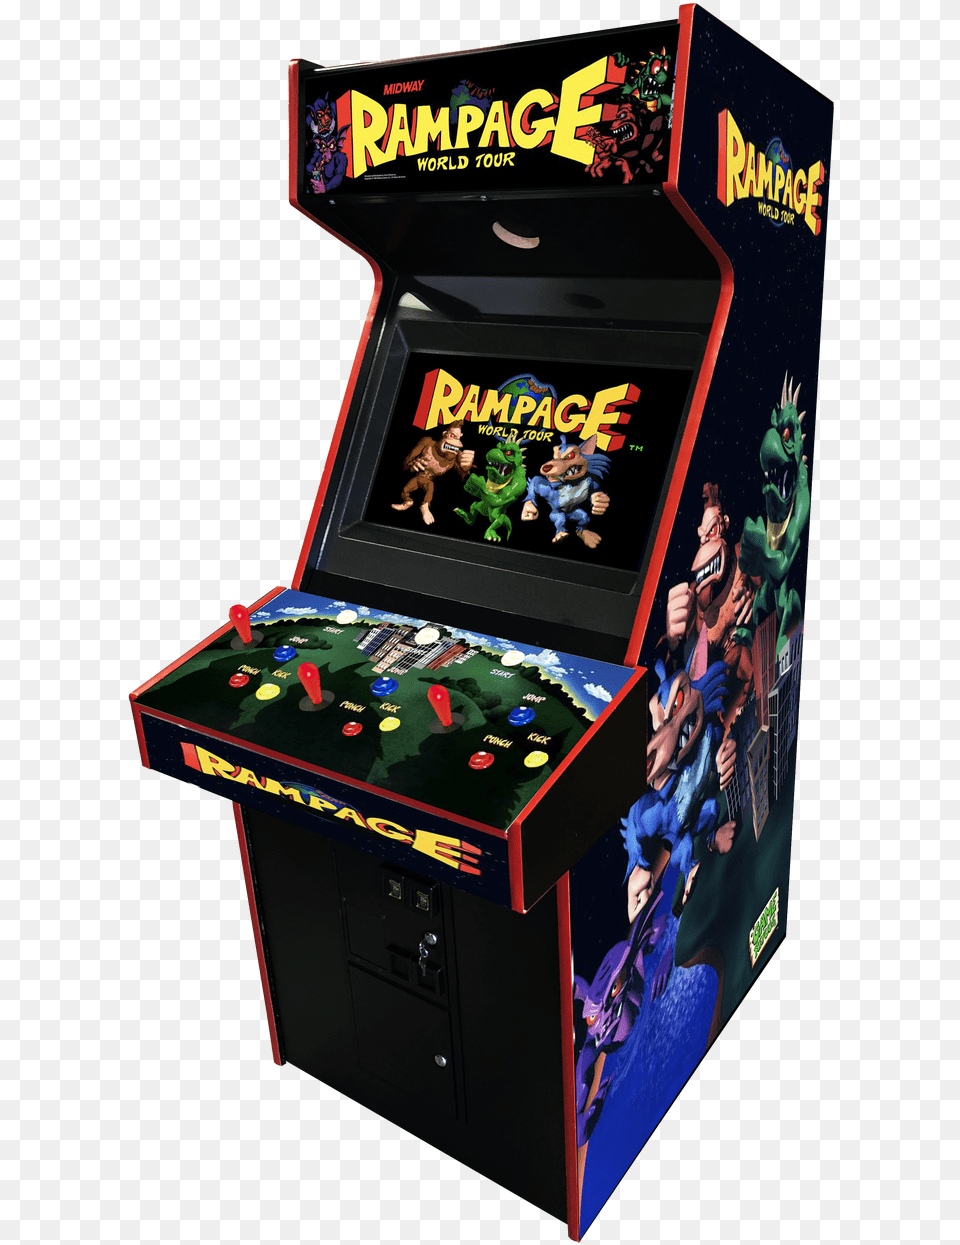 Rampage World Tour Arcade Video Game Rampage World Tour, Arcade Game Machine, Person Free Png Download